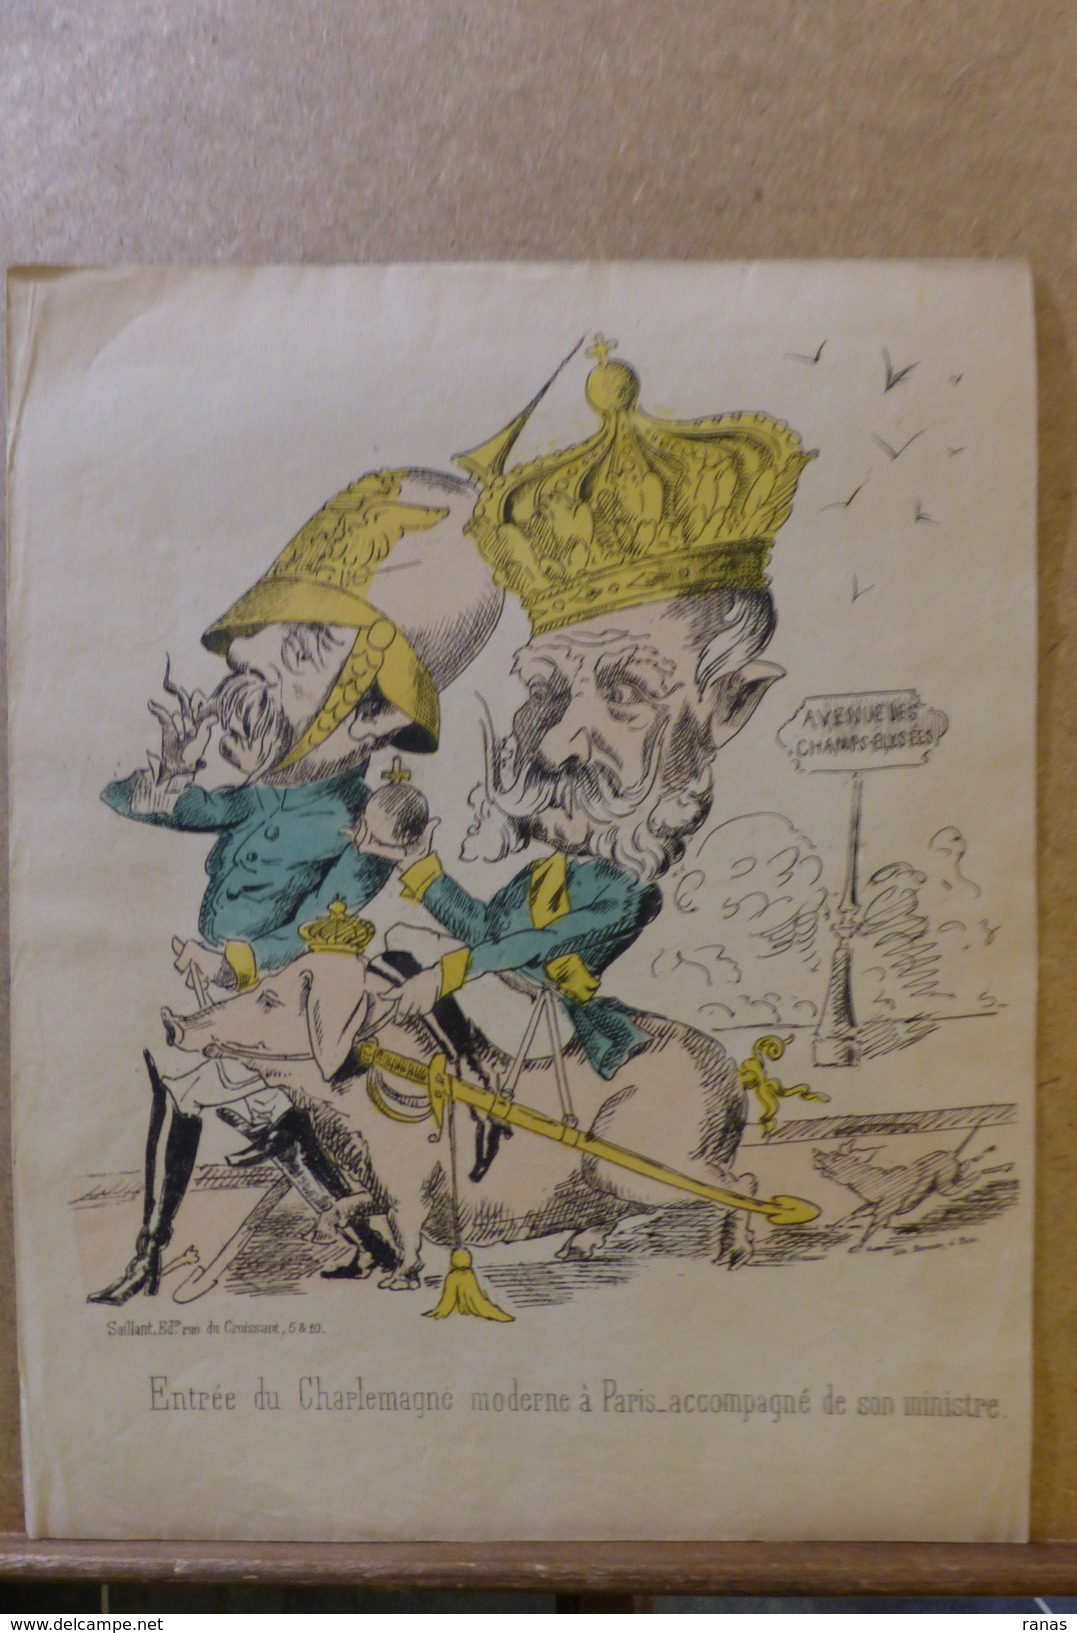 Estampe Gravure Satirique Caricature D'époque 1870 Bismarck Cochon Pig Guillaume Paris 35,5 X 28 - Stiche & Gravuren